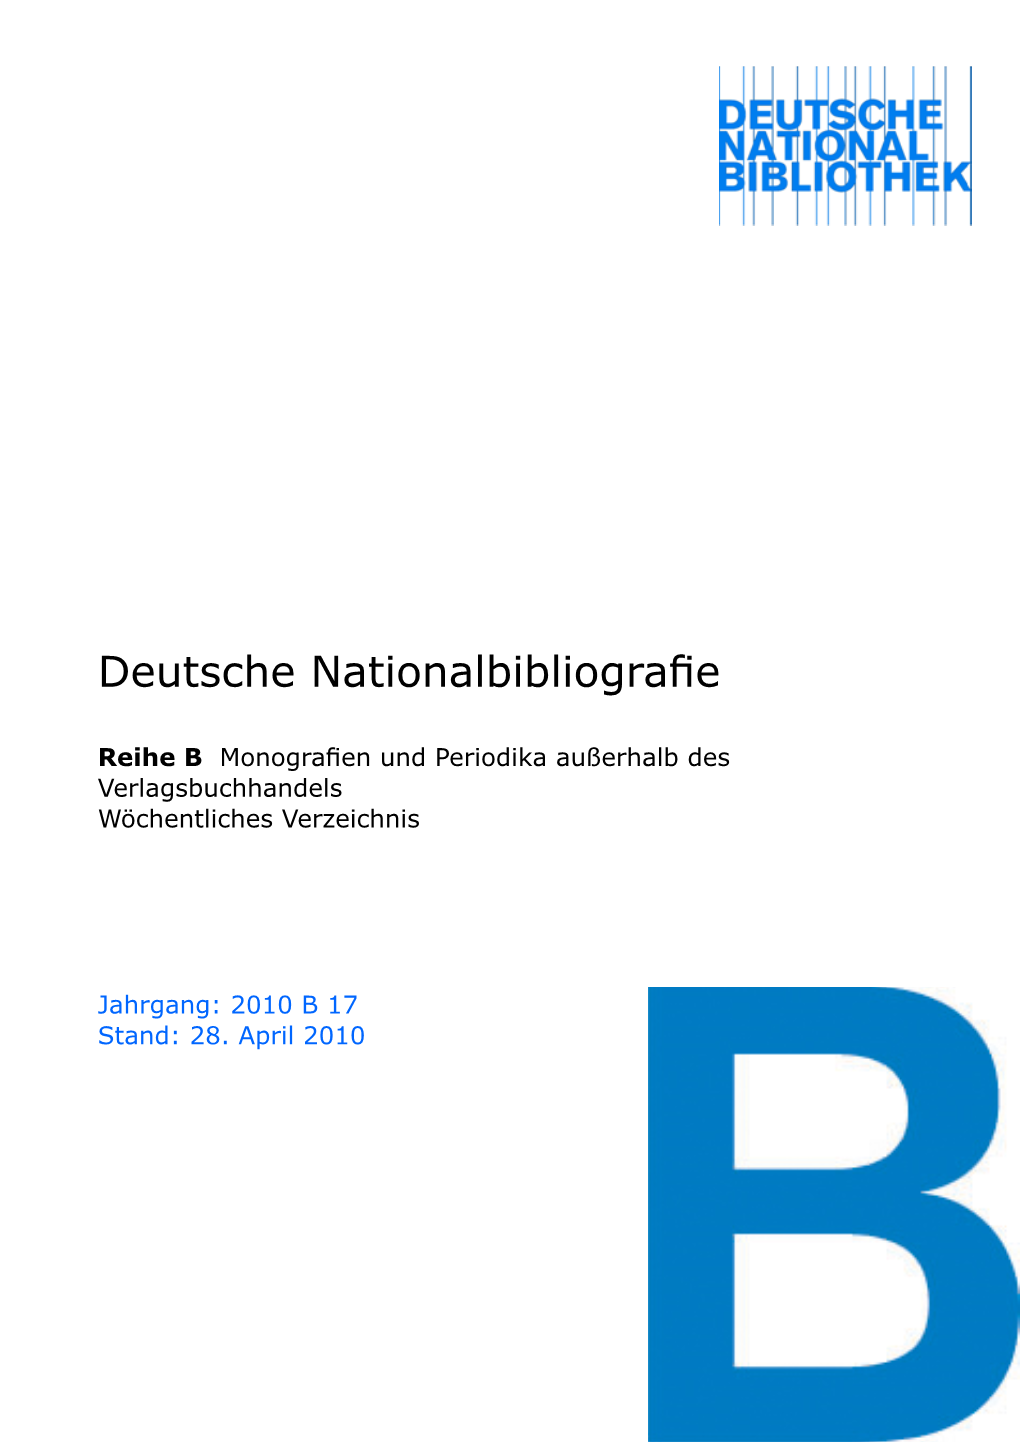 Deutsche Nationalbibliografie 2010 B 17